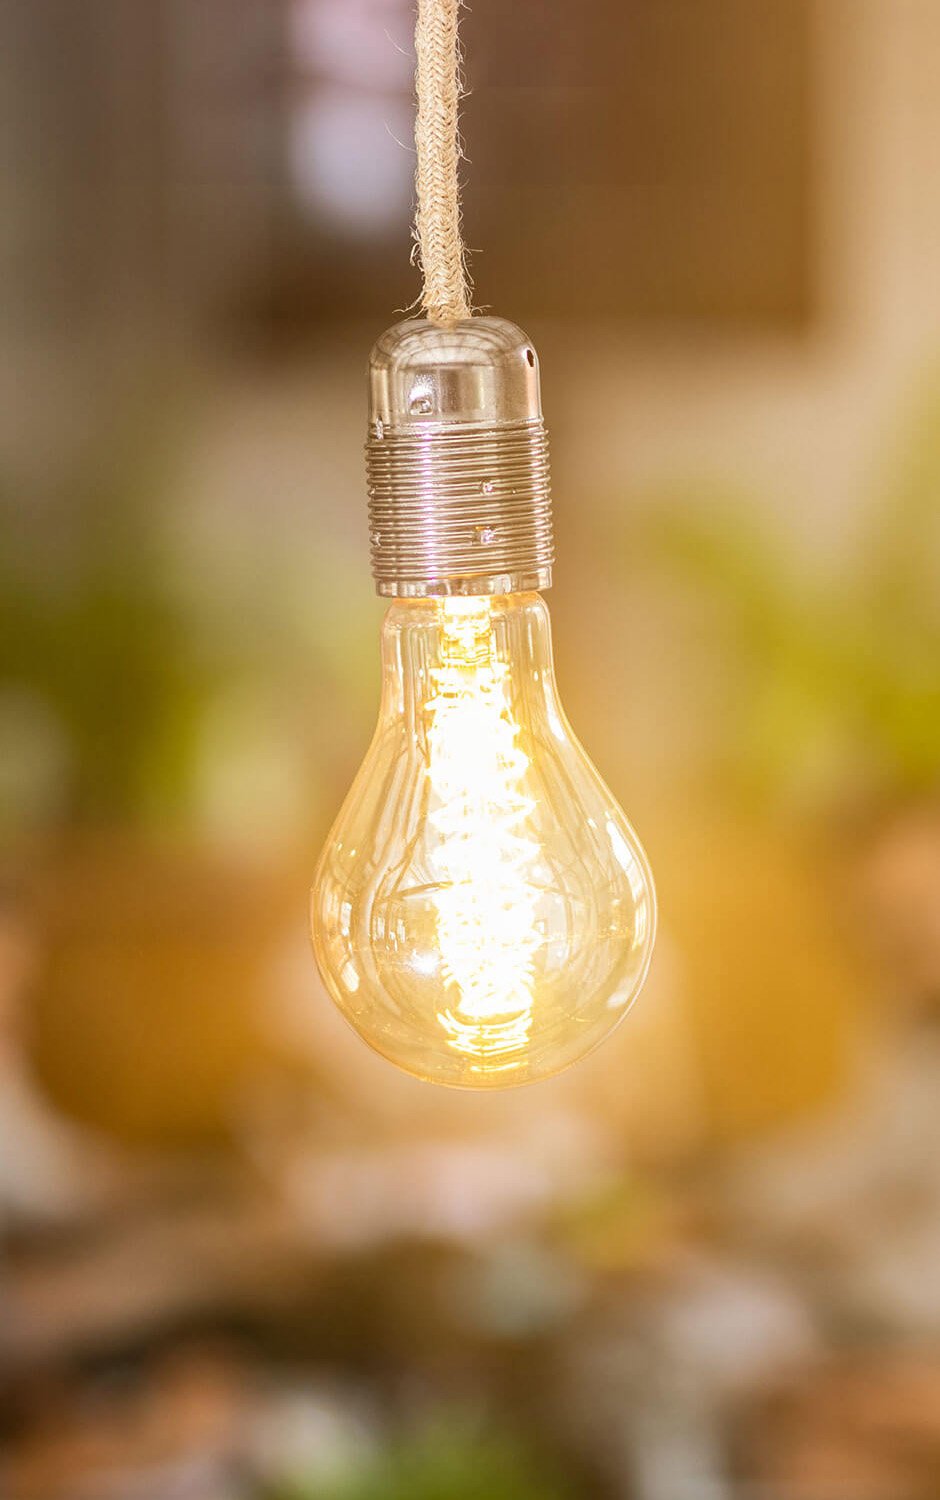 A close image of a light bulb